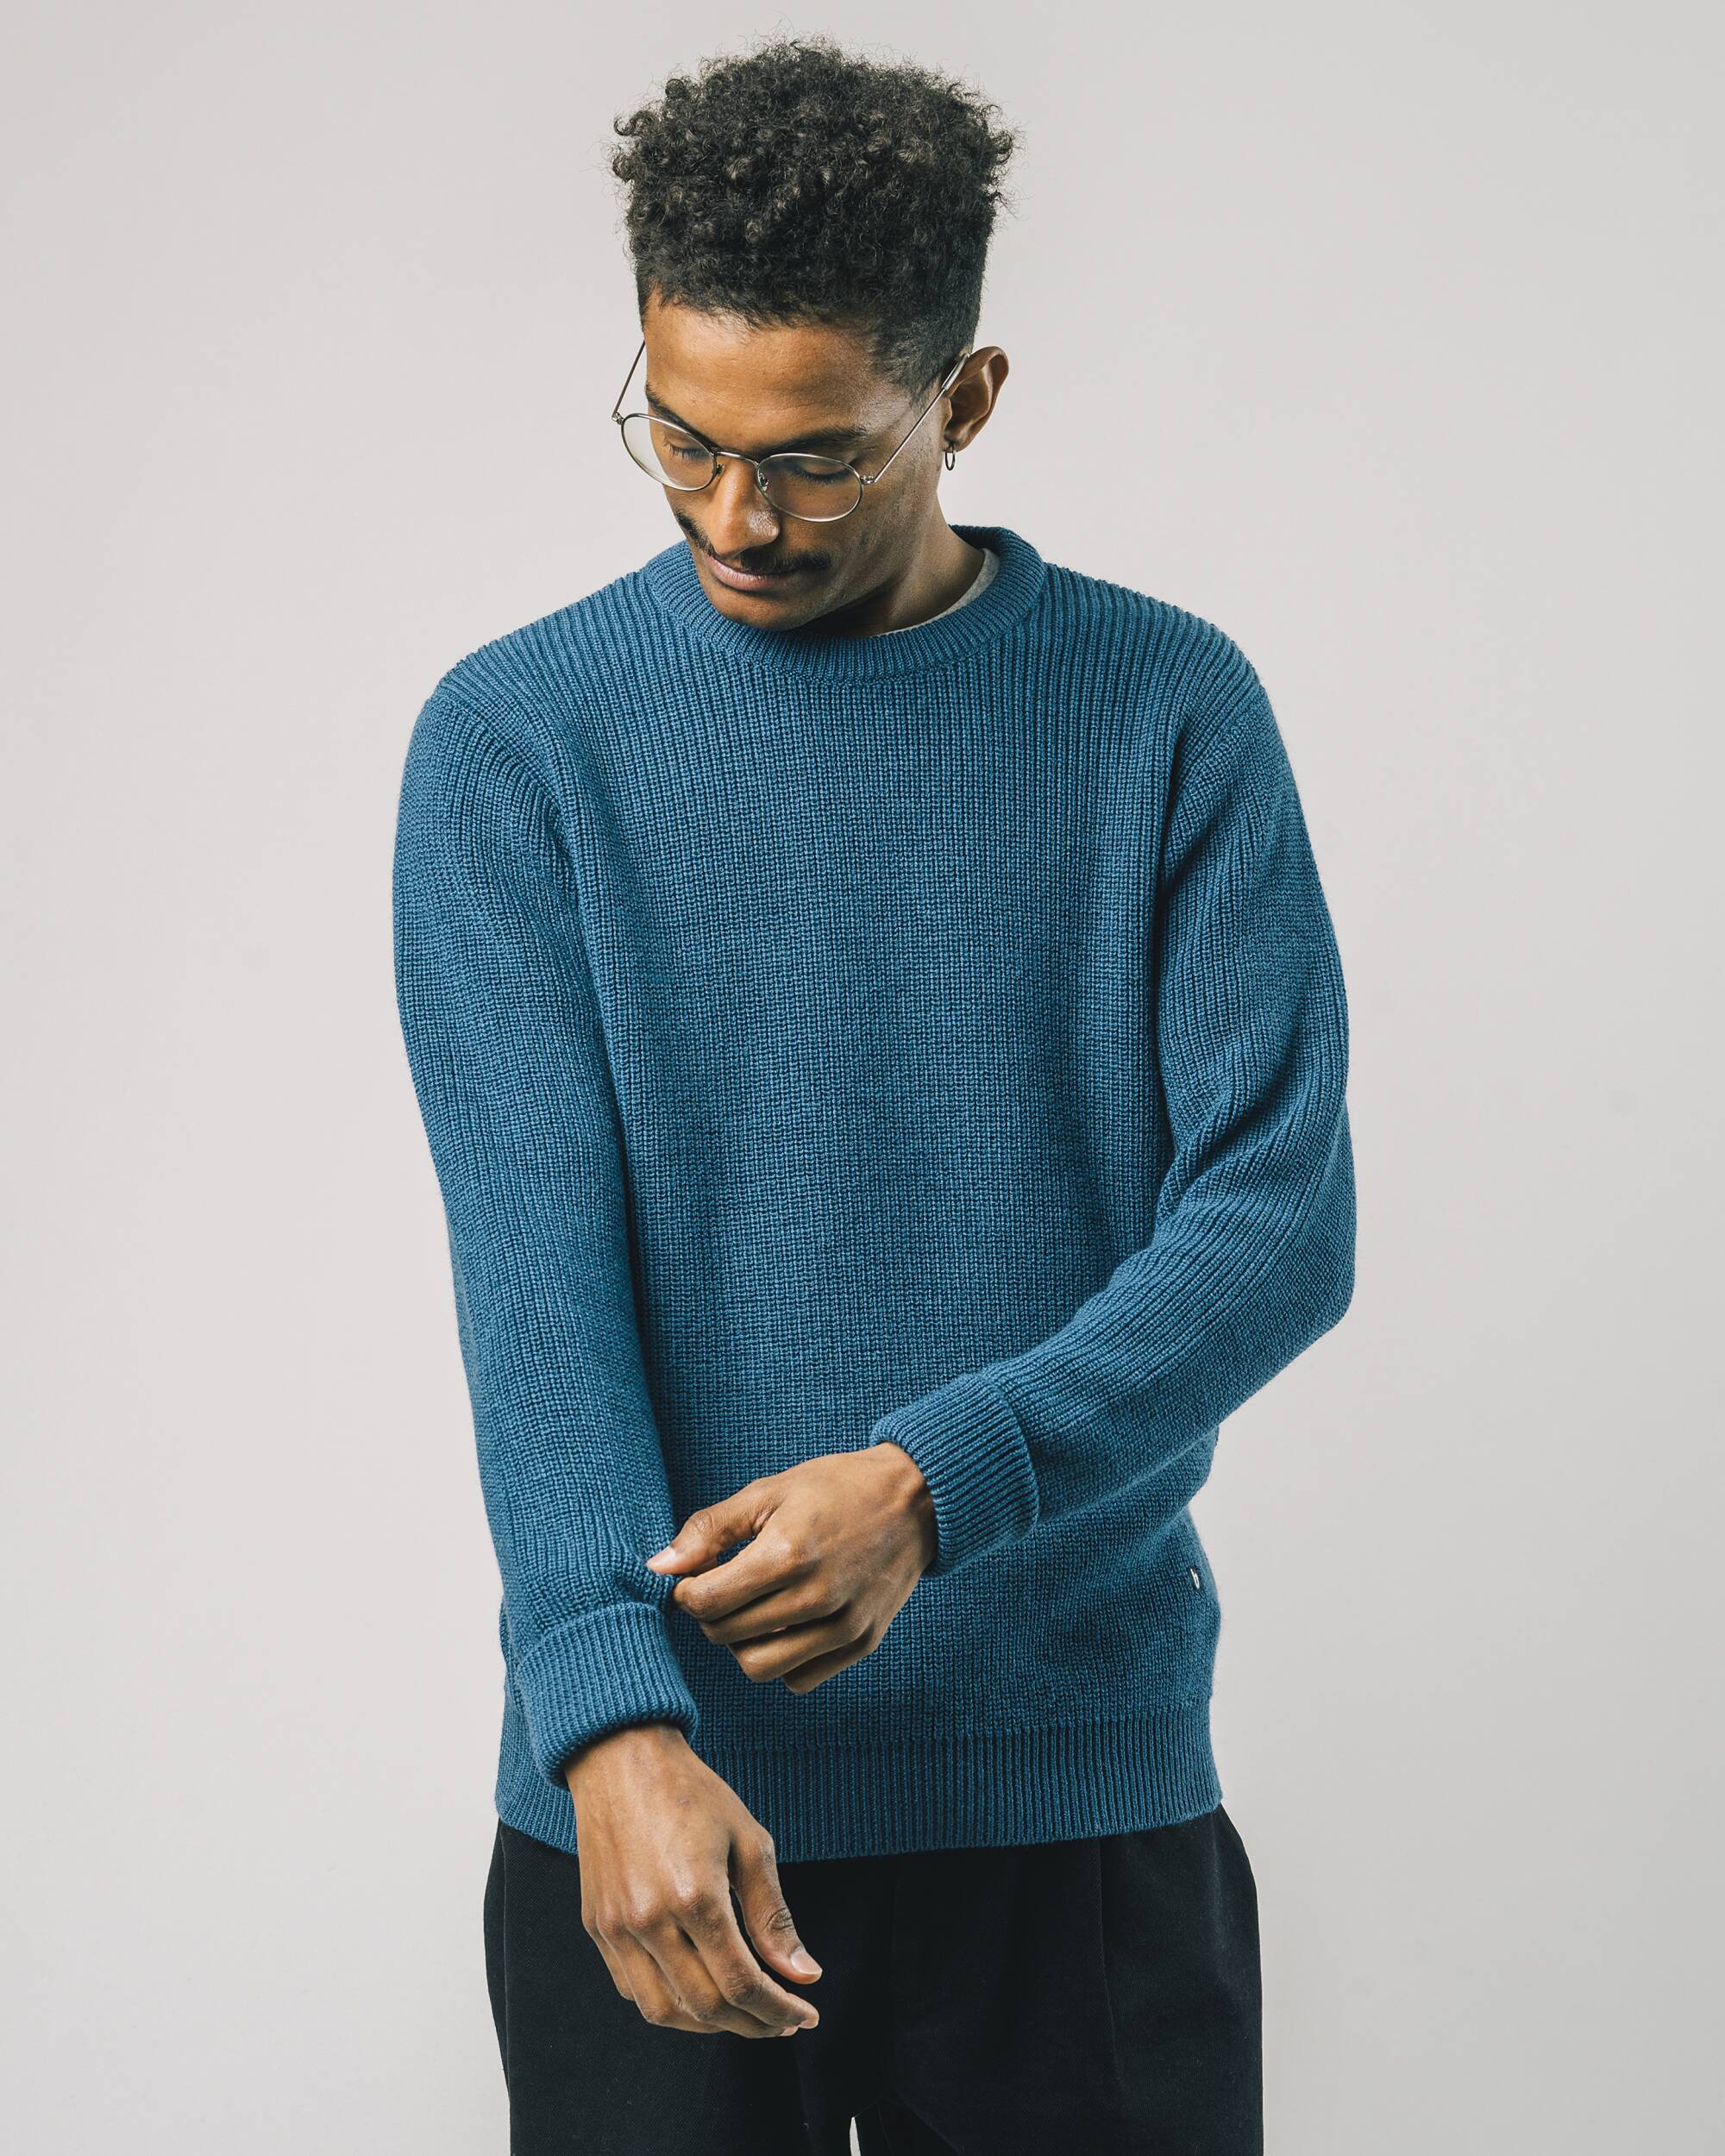 Sweater "Waterfront" in blau aus 100% Bio - Merinowolle von Brava Fabrics